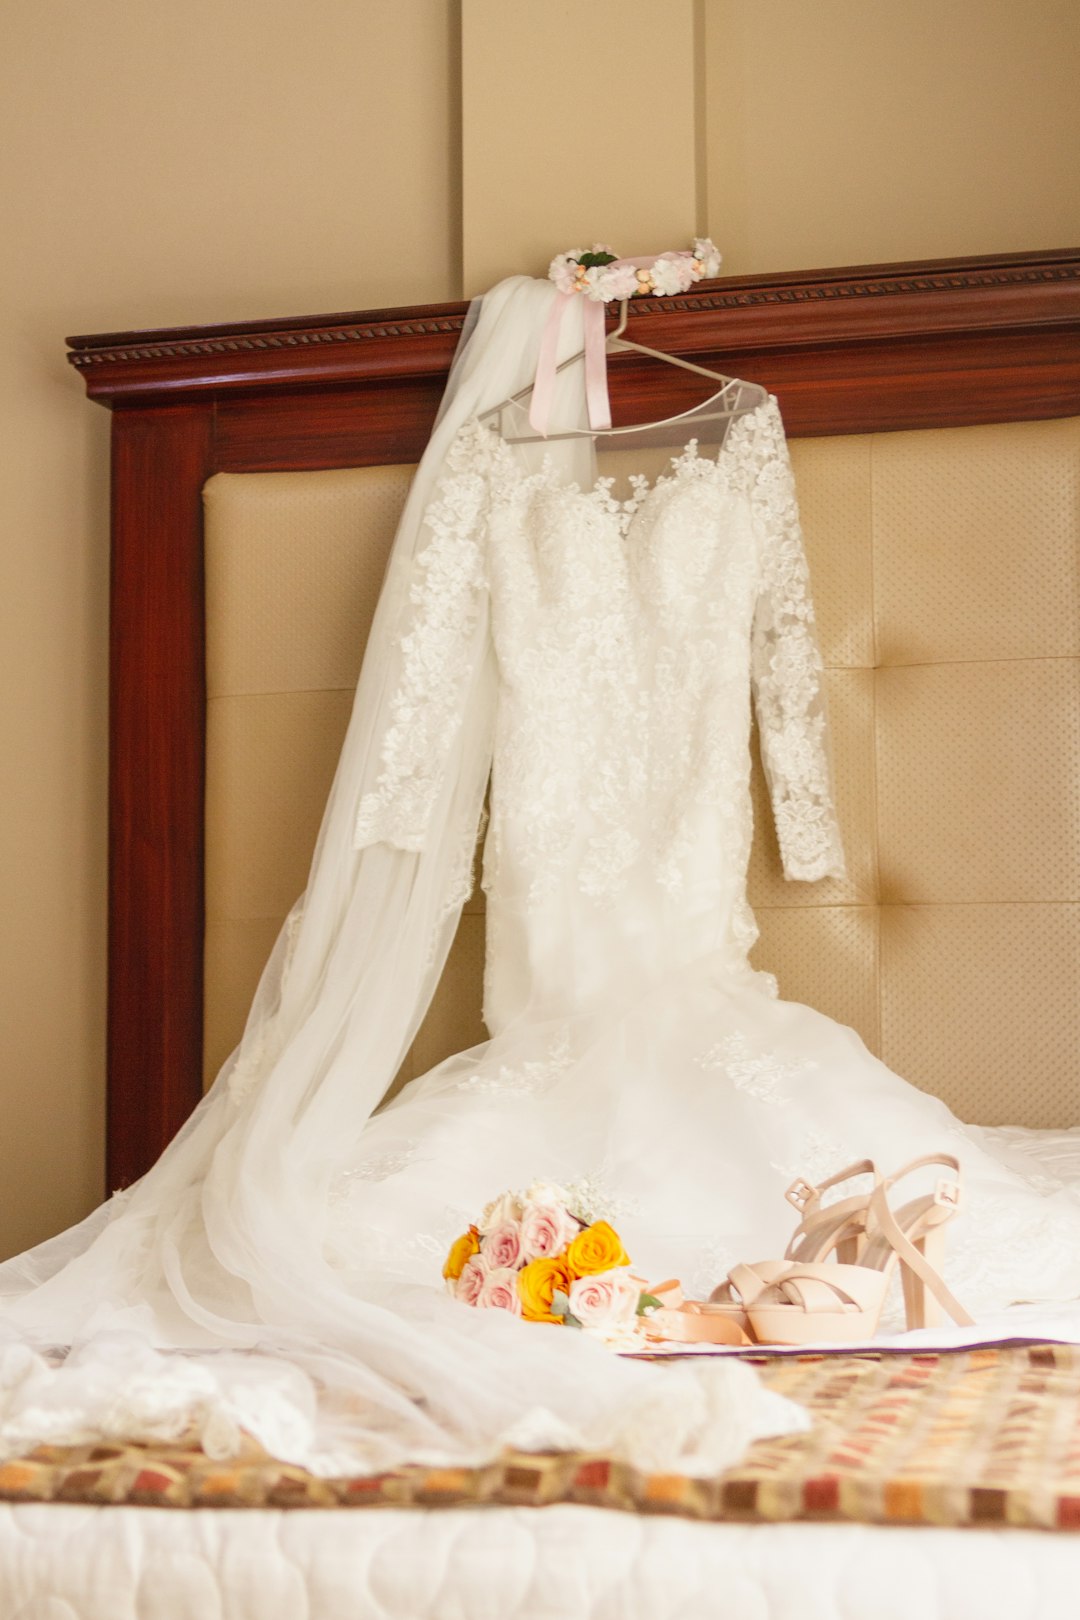 white wedding dress on white textile